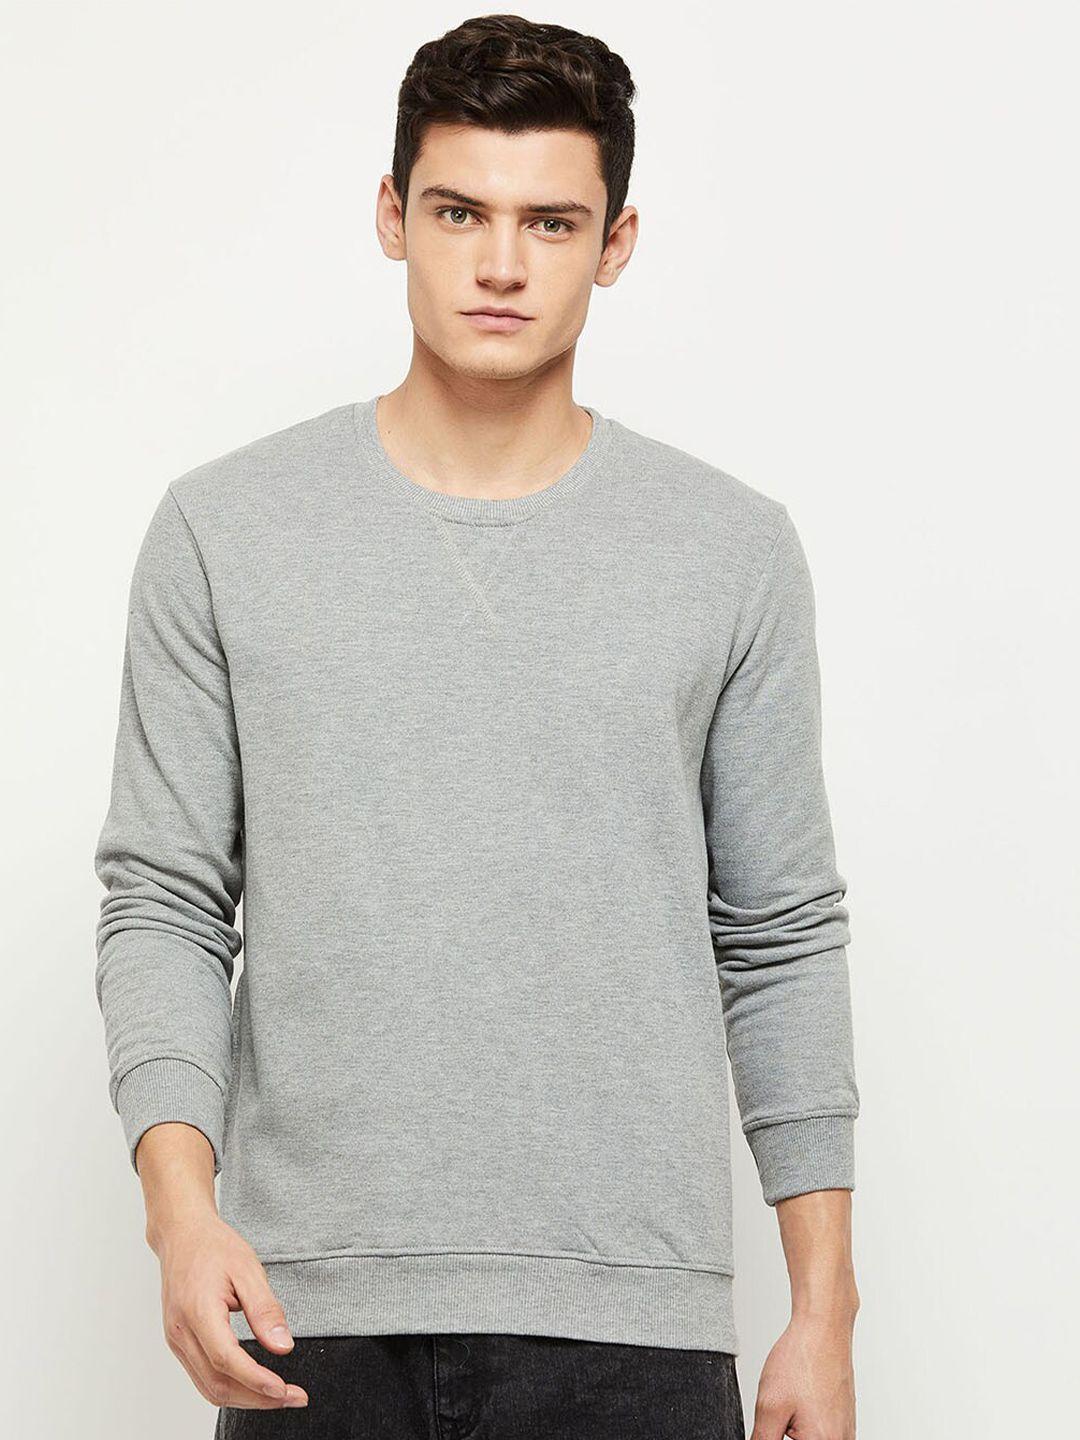 max-men-grey-melange-solid-sweatshirt